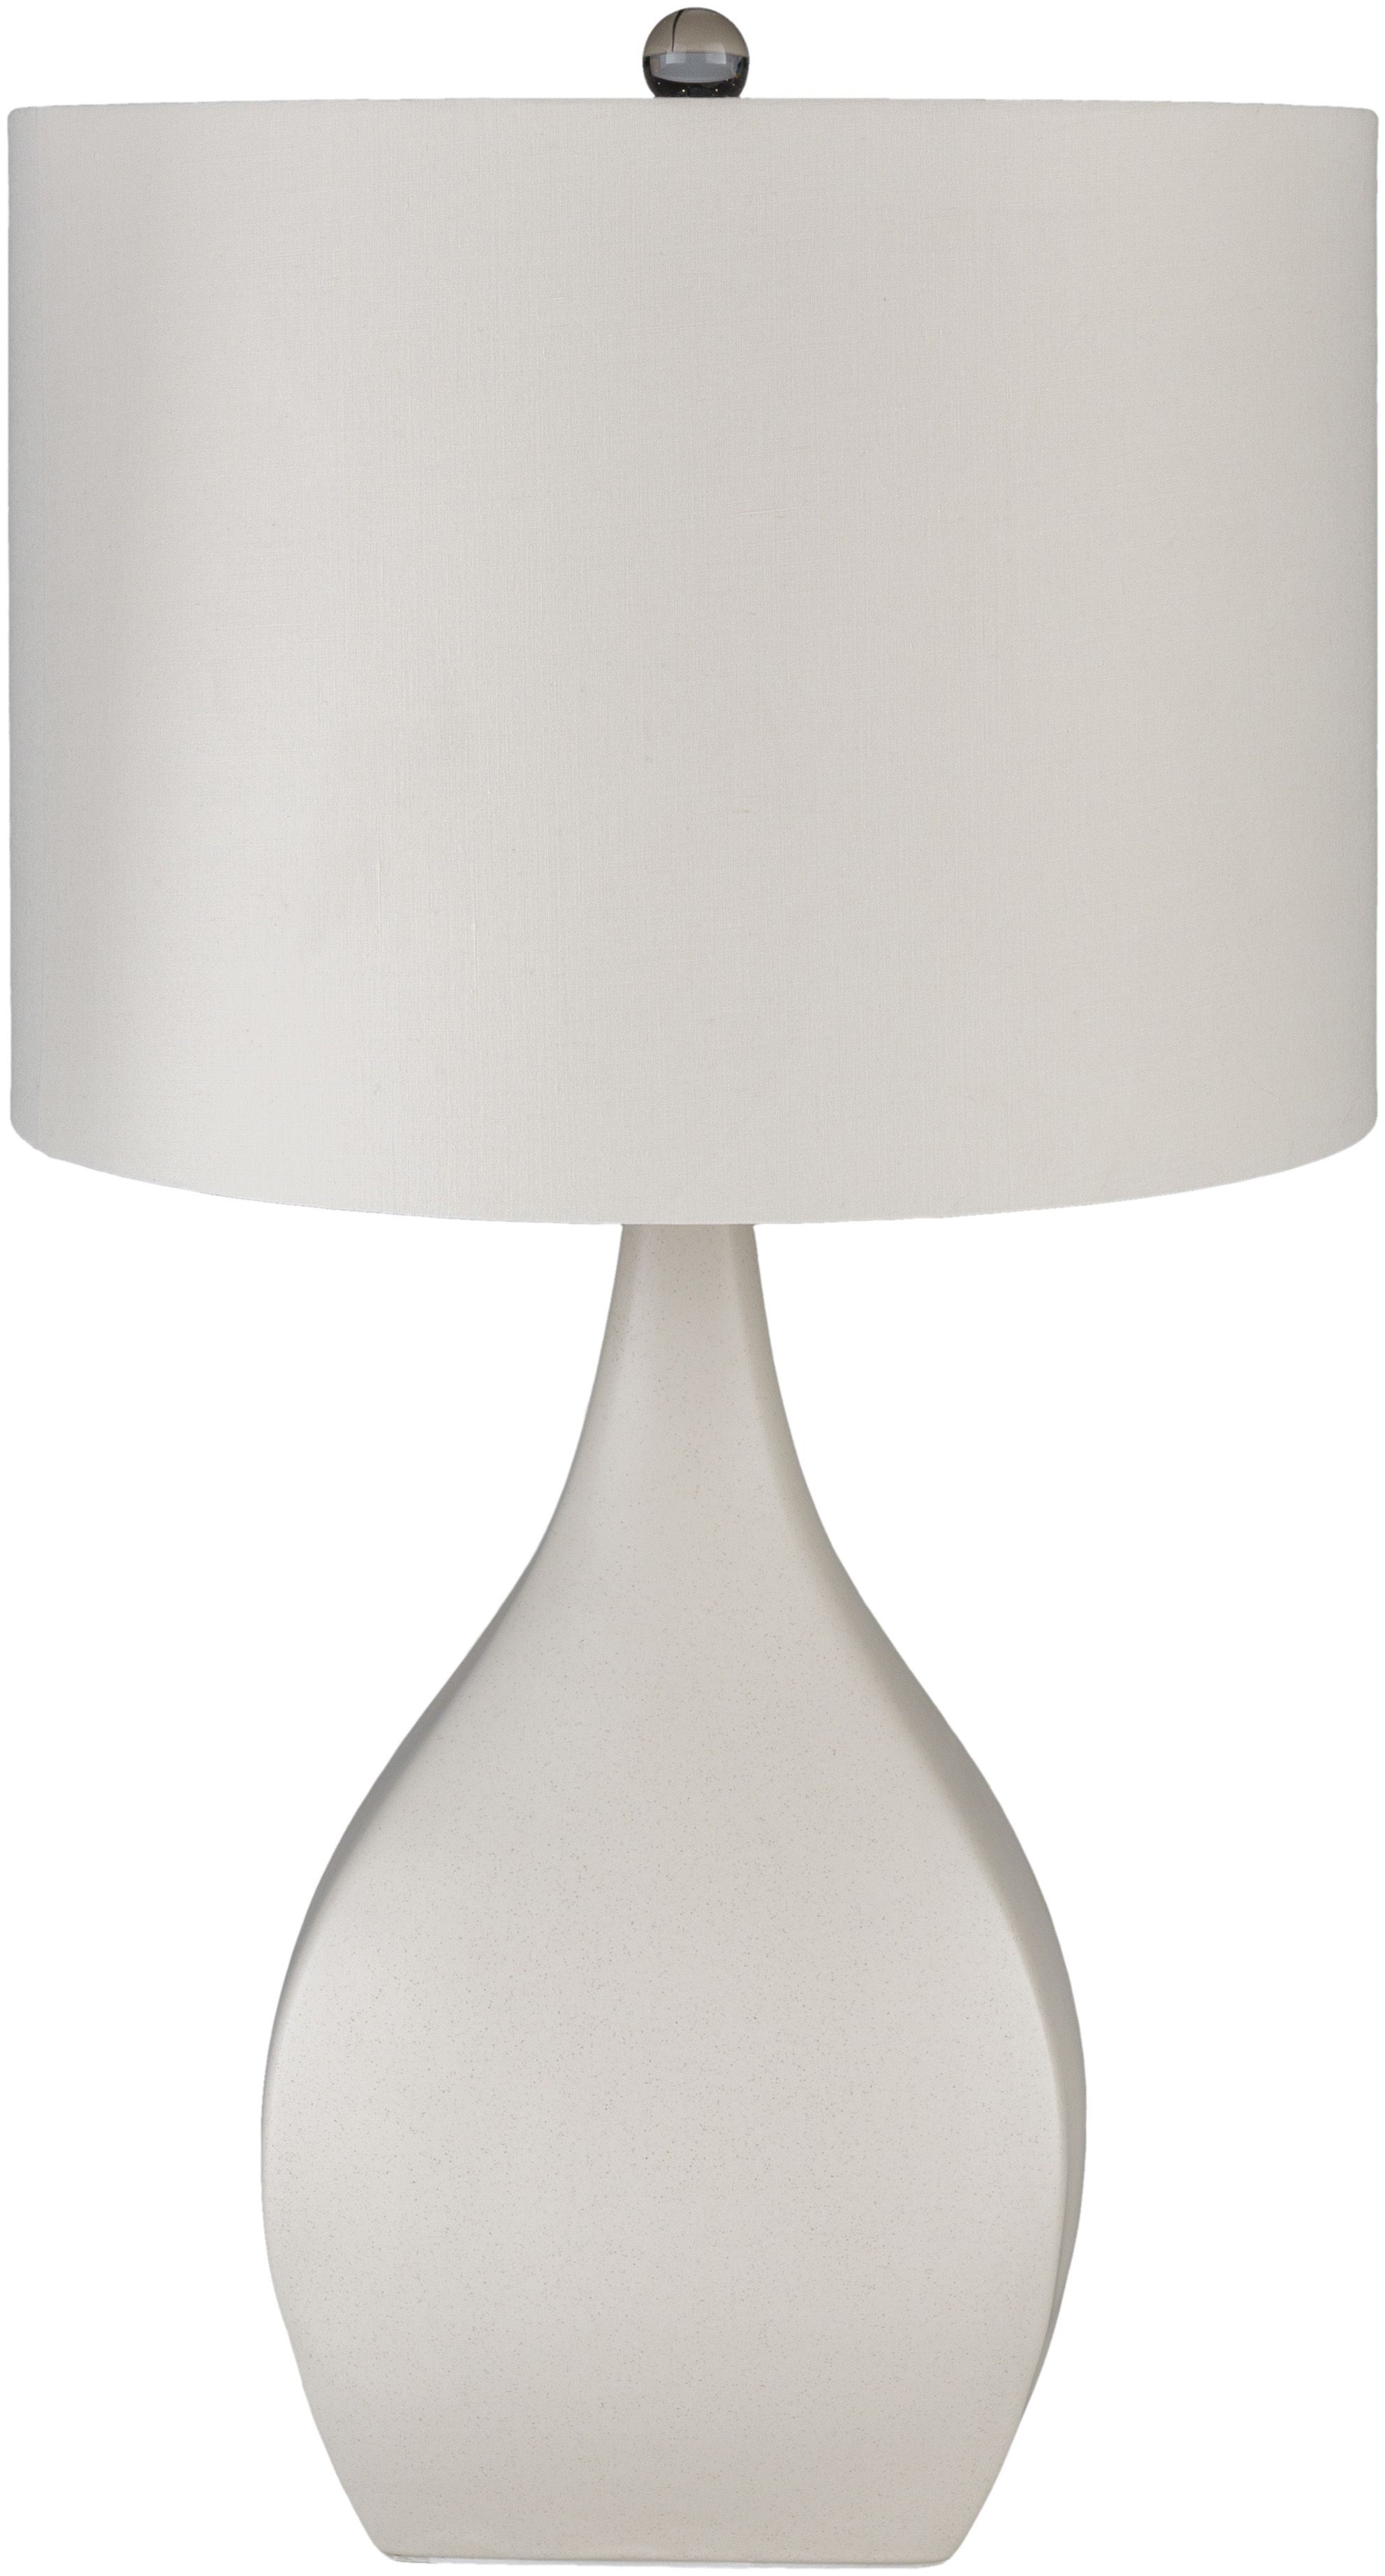 Surya Hinton Cream Ceramic Table Lamp